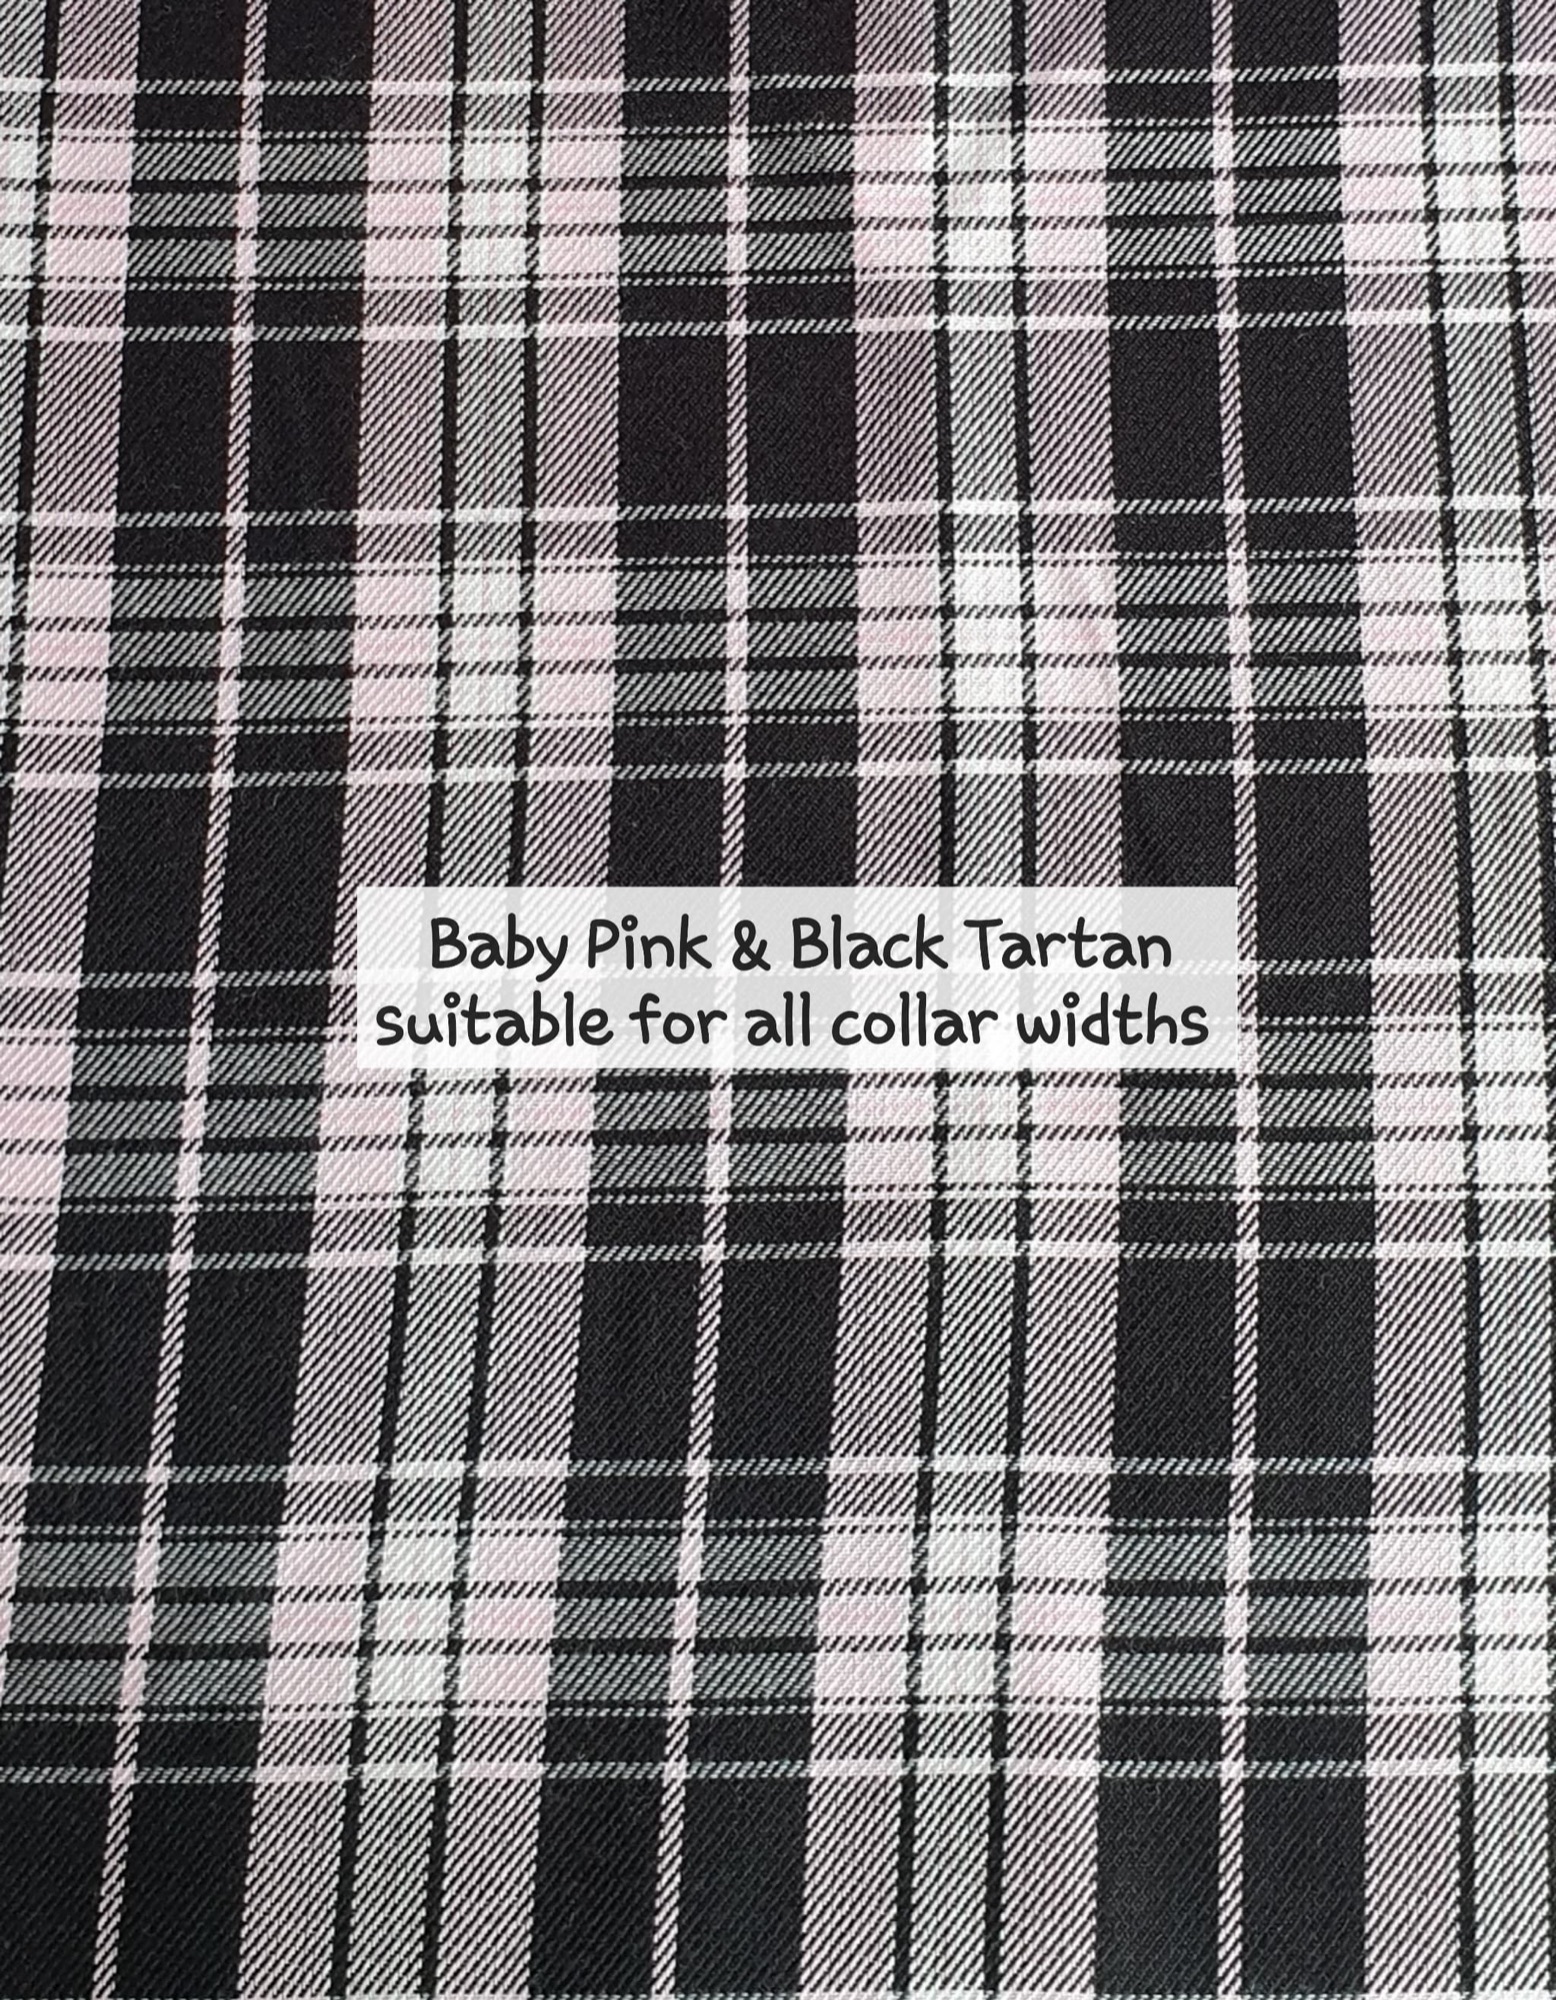 Baby Pink & Black Tartan